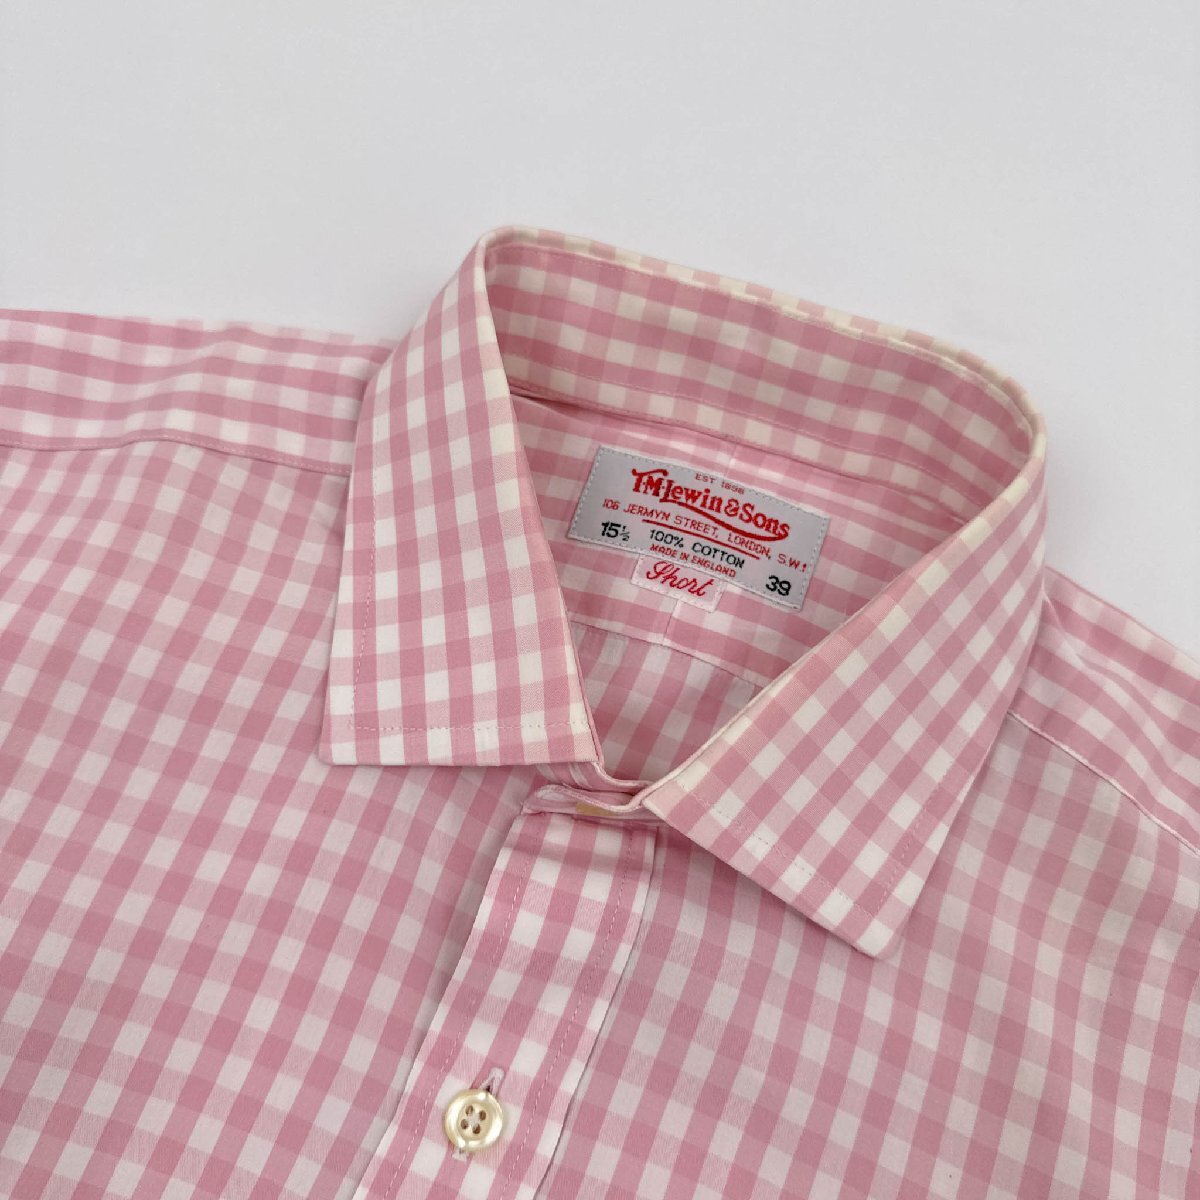 英国製◆T.M.Lewin&Sons ダブルカフス ギンガムチェック ワイシャツ ドレスシャツ 15 1/2 39 ピンク×白 イングランド製_画像3